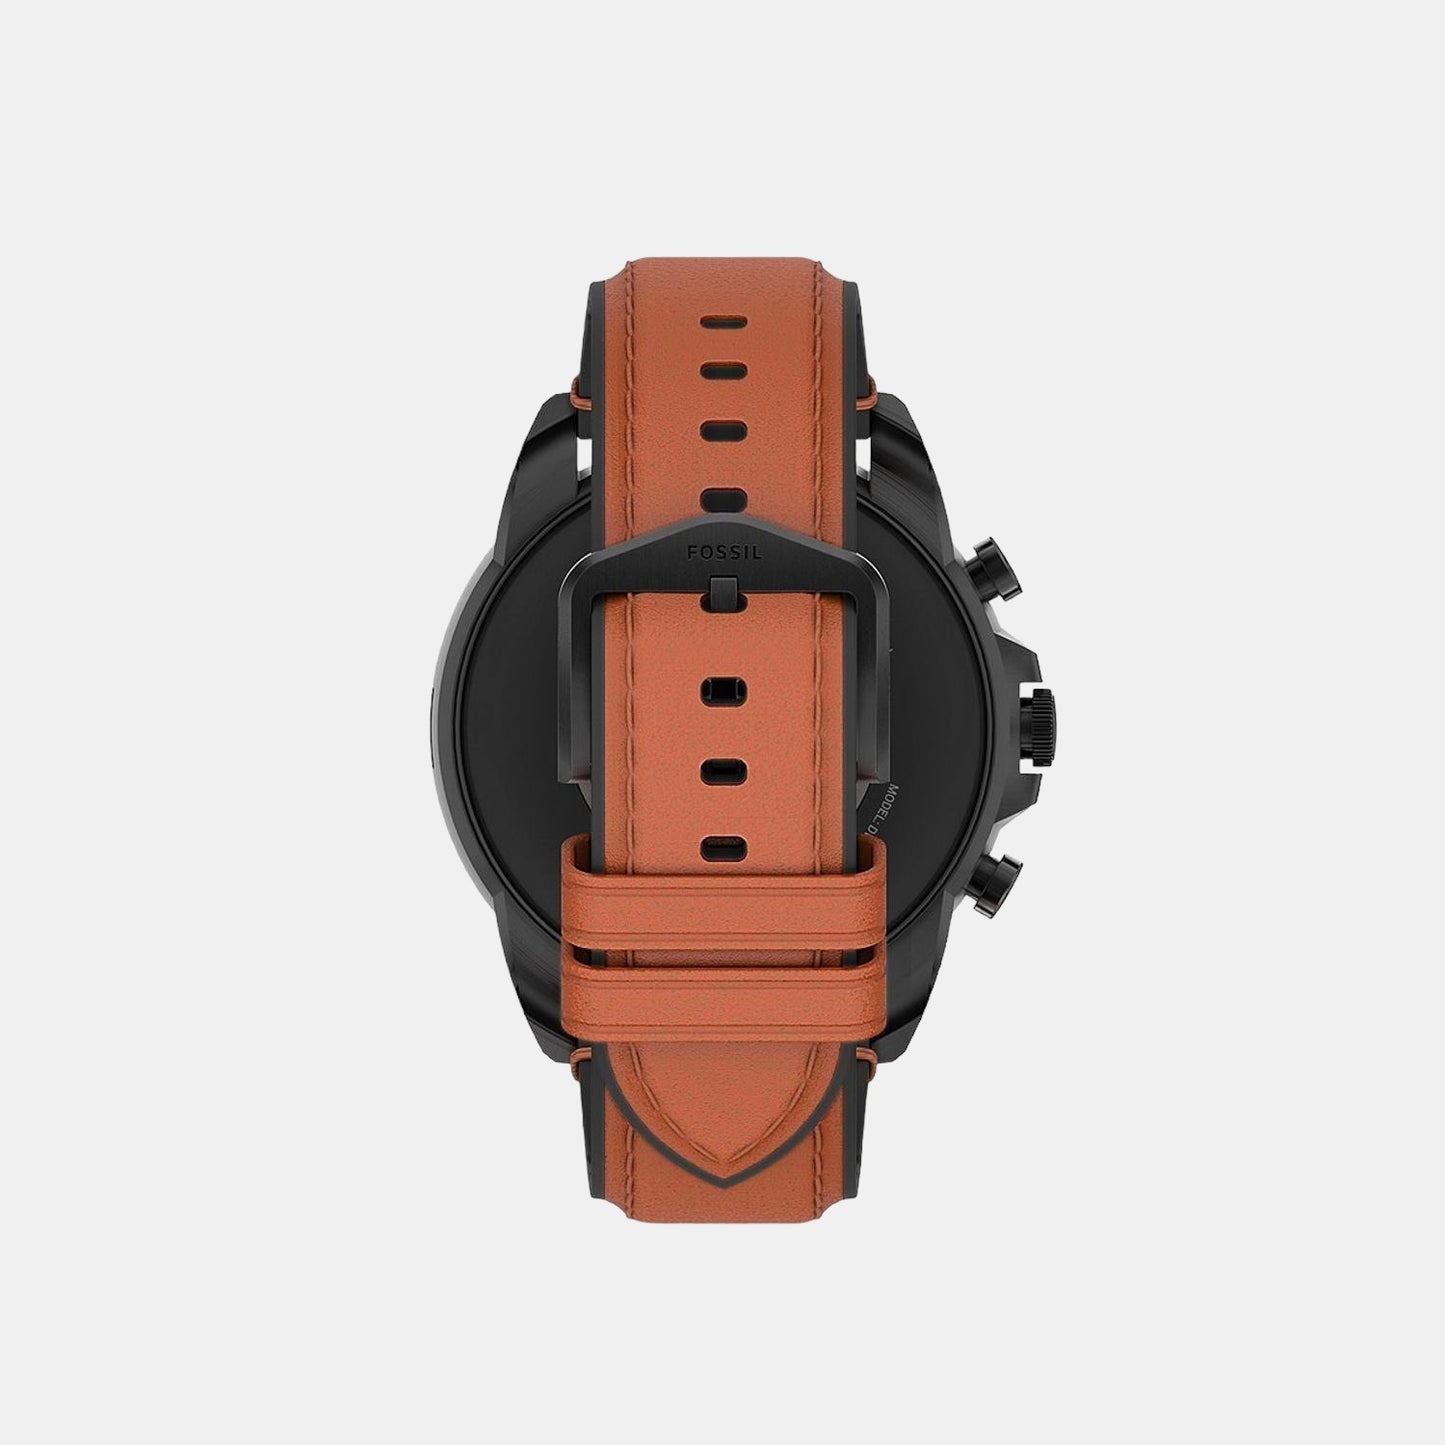 fossil-black-digital-men-smart-watch-ftw4062